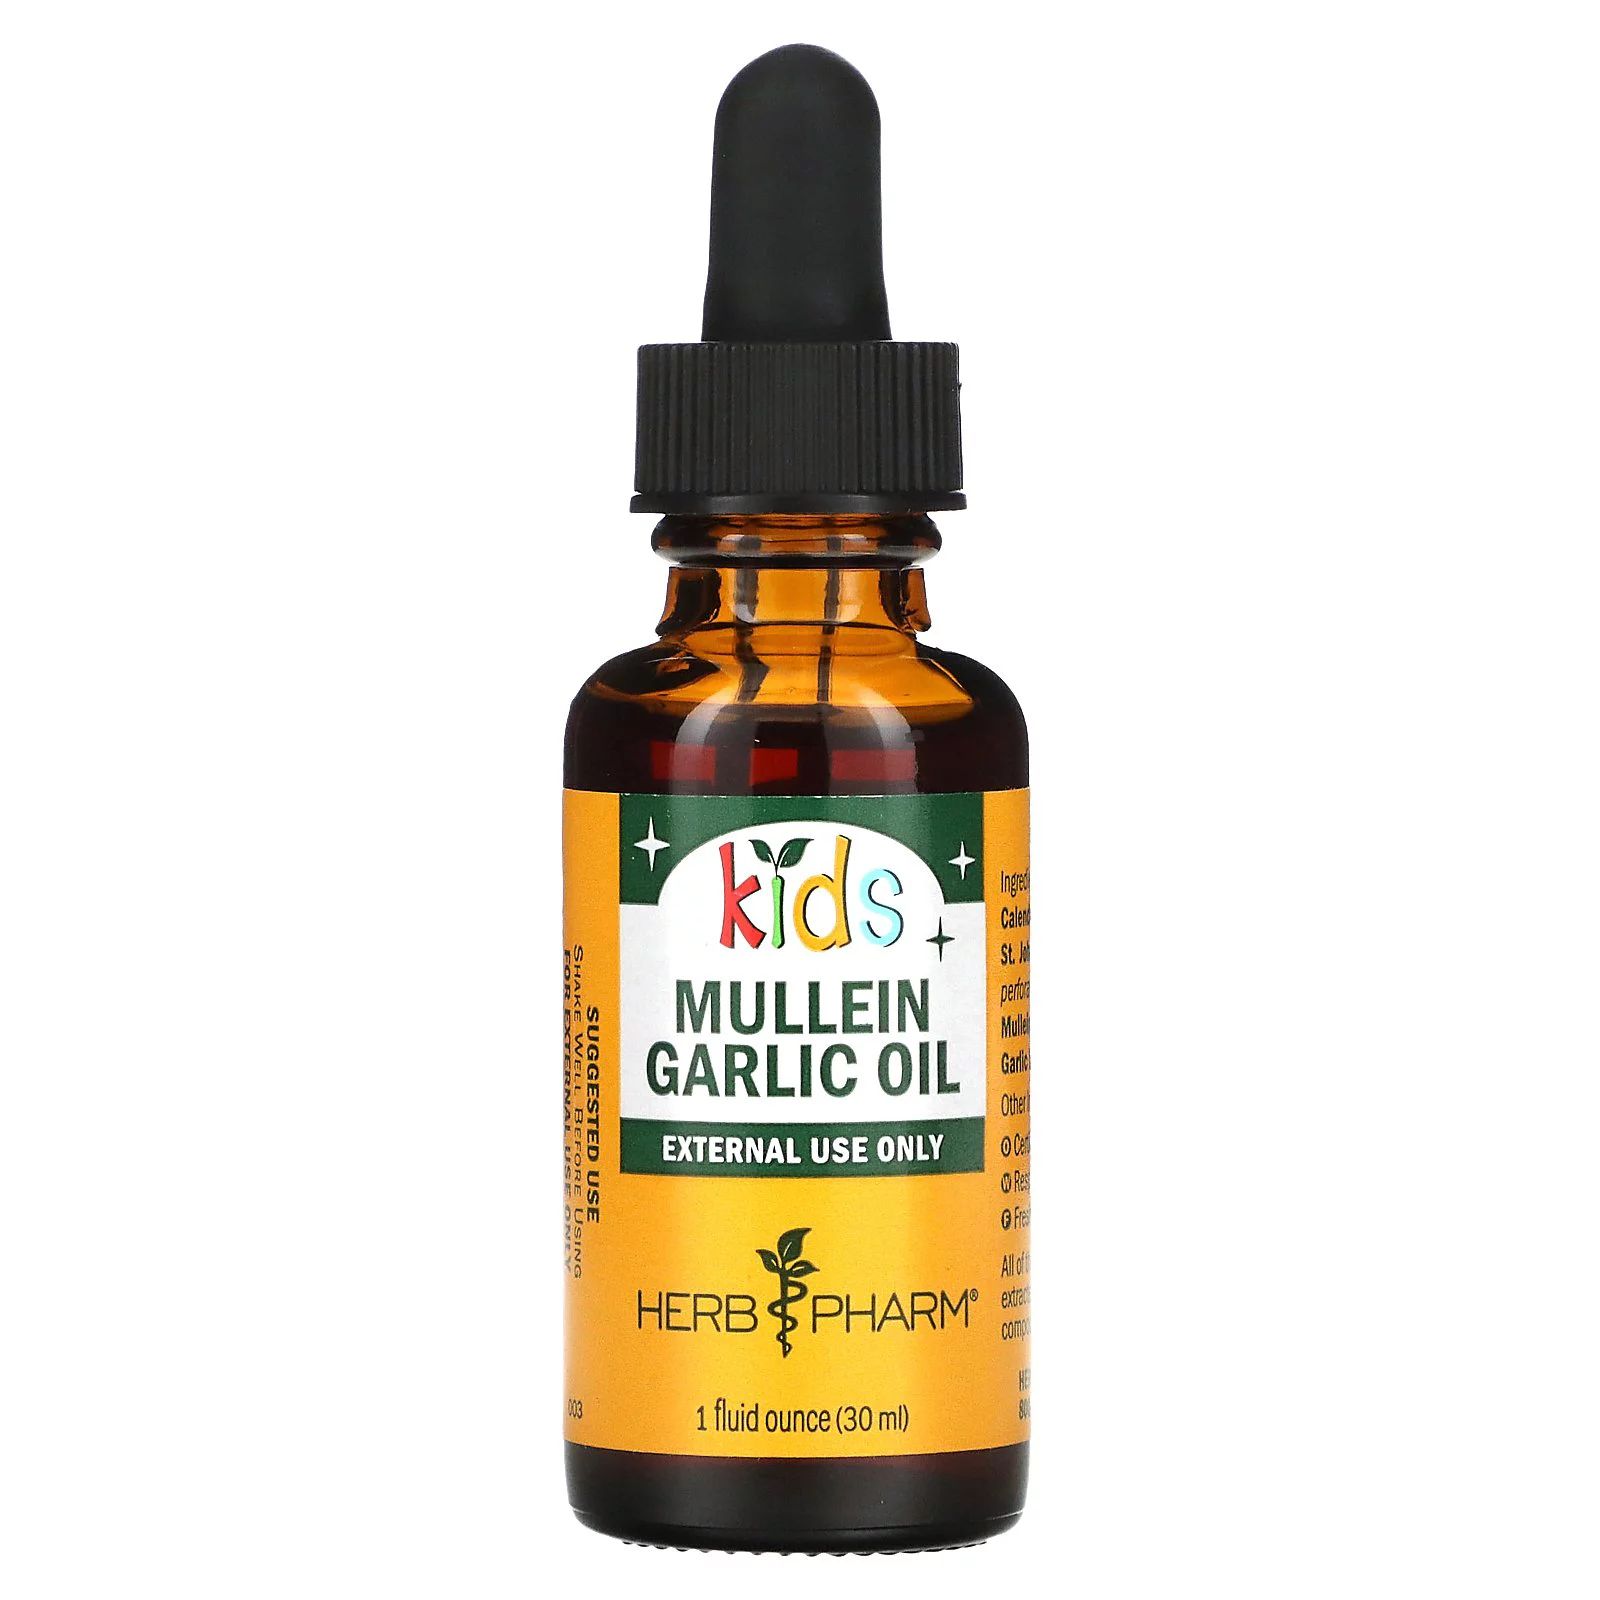 Kids Mullein Garlic Oil, 1 fl oz (30 ml), Herb Pharm | Walmart (US)